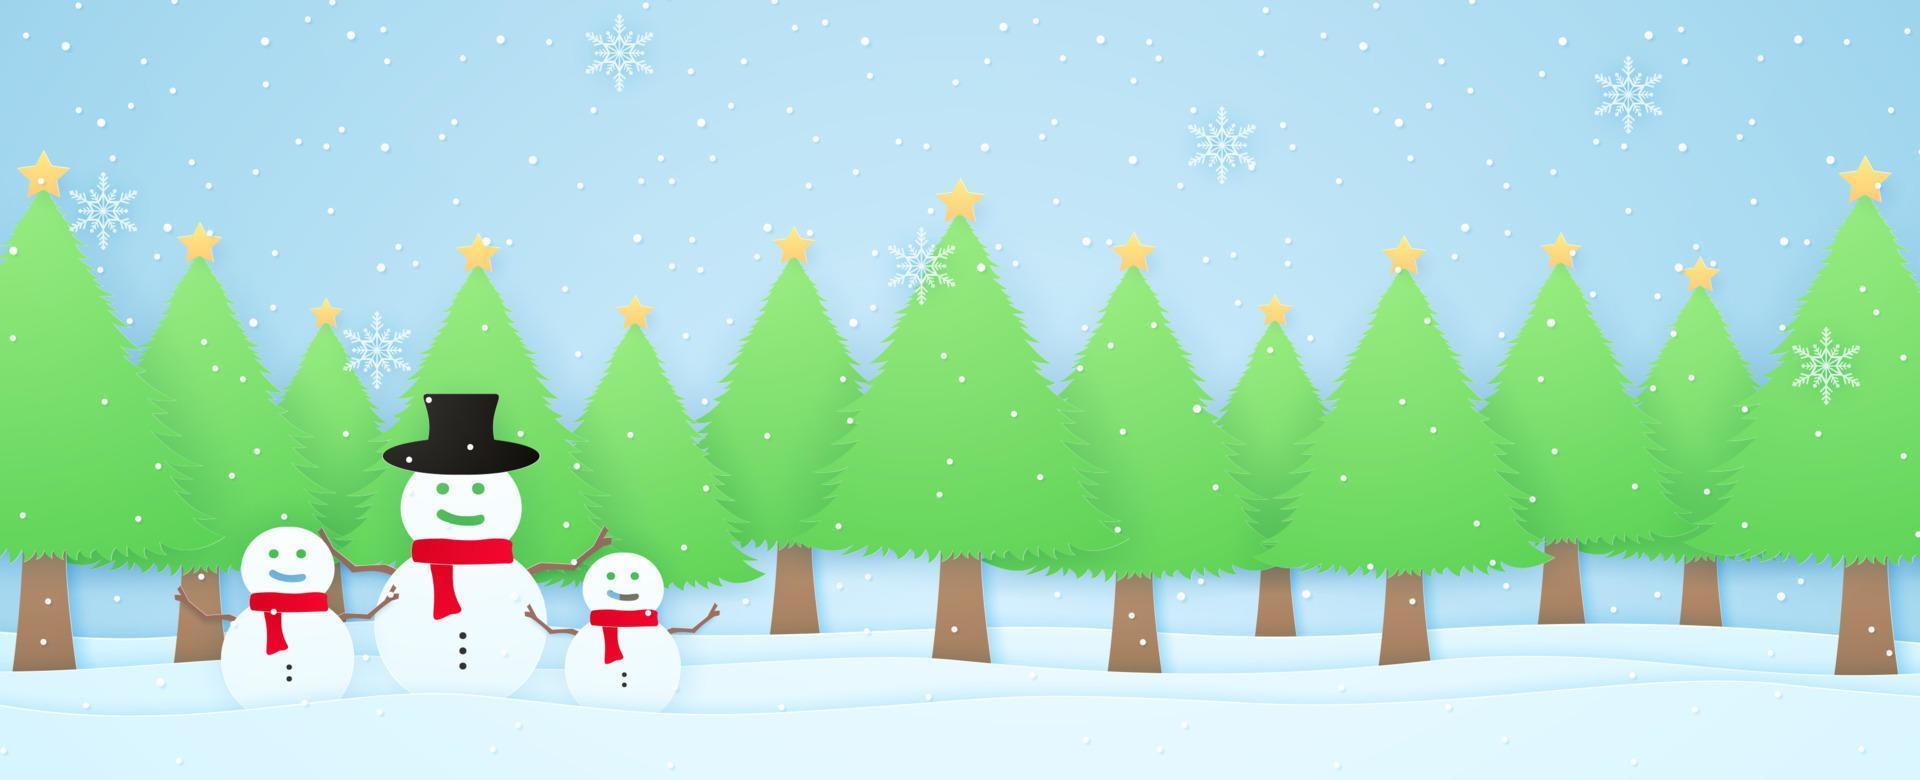 paesaggio invernale, alberi di natale con pupazzo di neve sulla neve con neve che cade e fiocchi di neve, stile paper art vettore